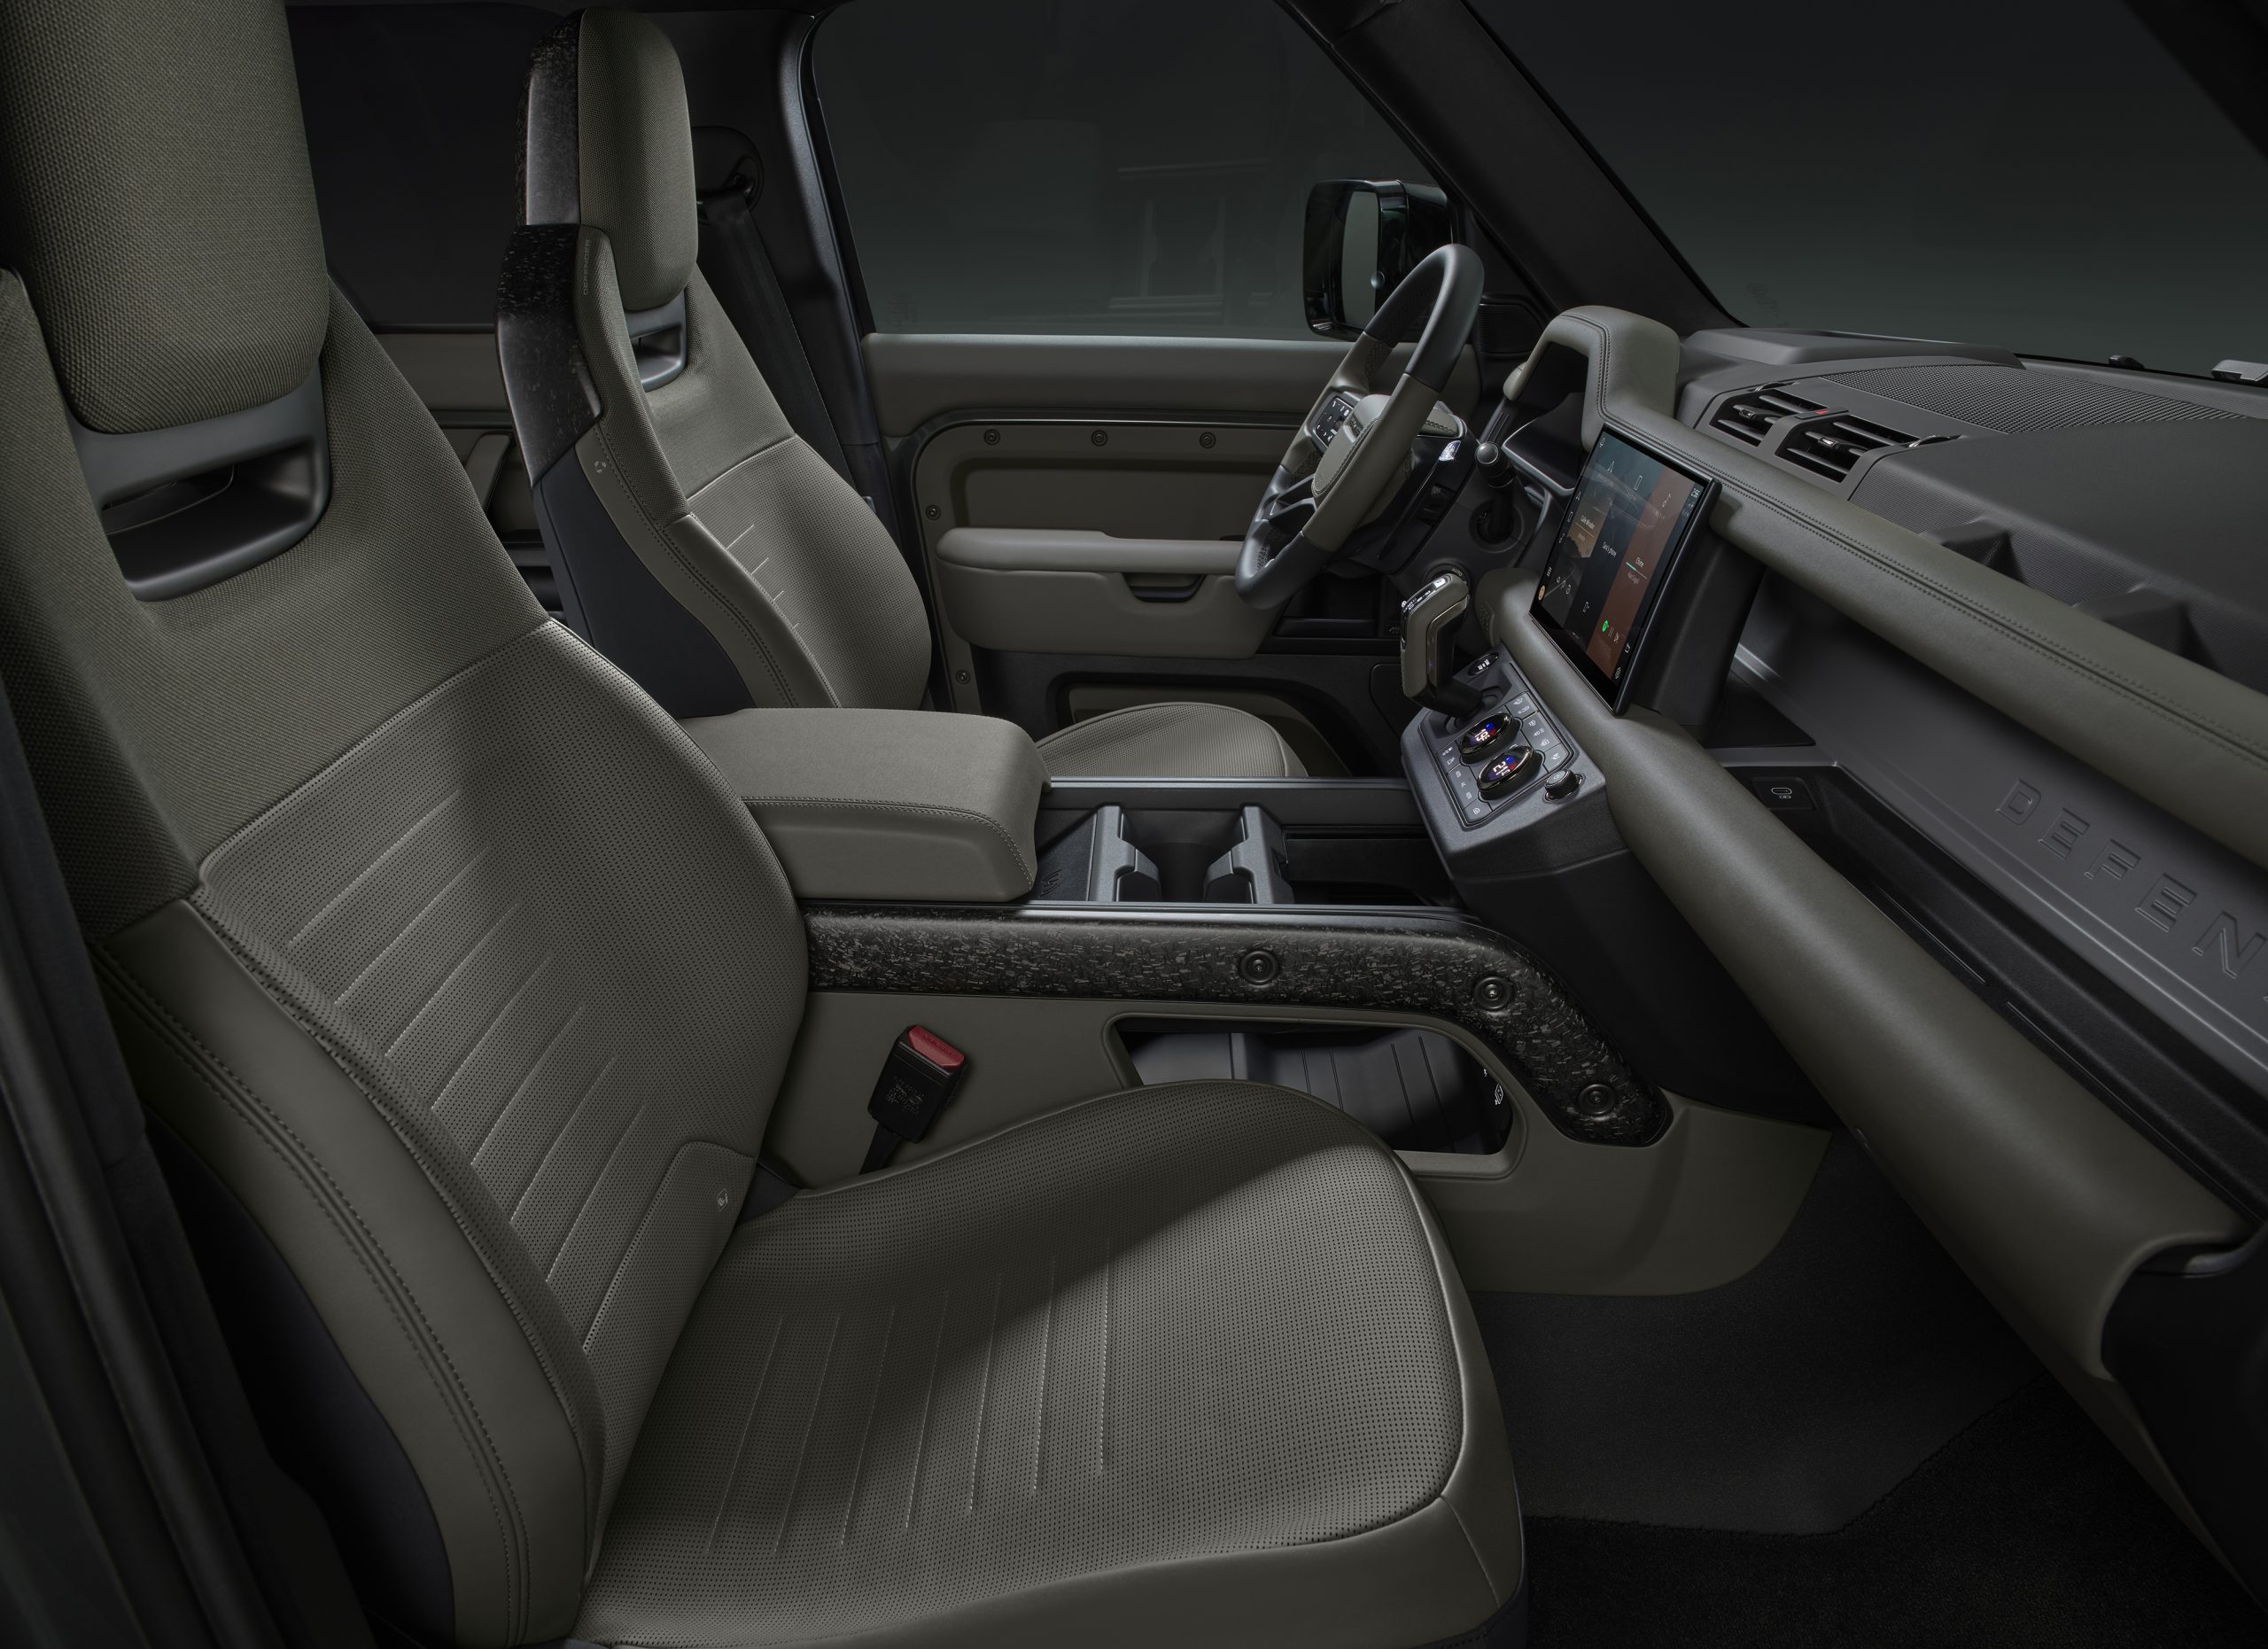 Land Rover Defender OCTA interior 2